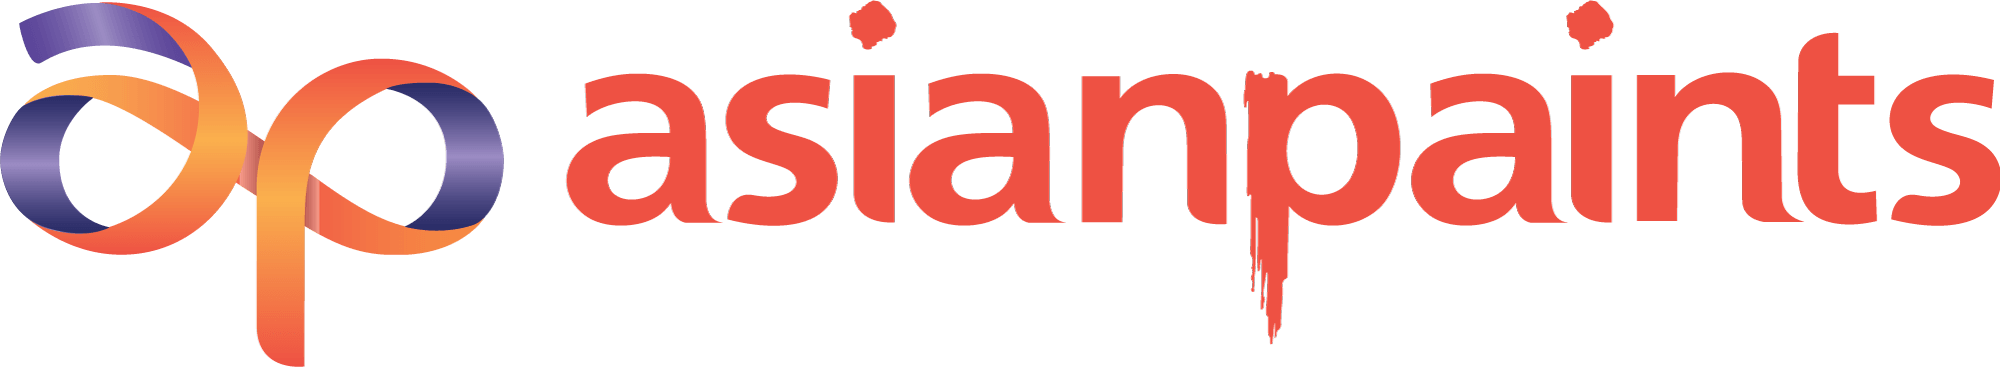 asian paints logo